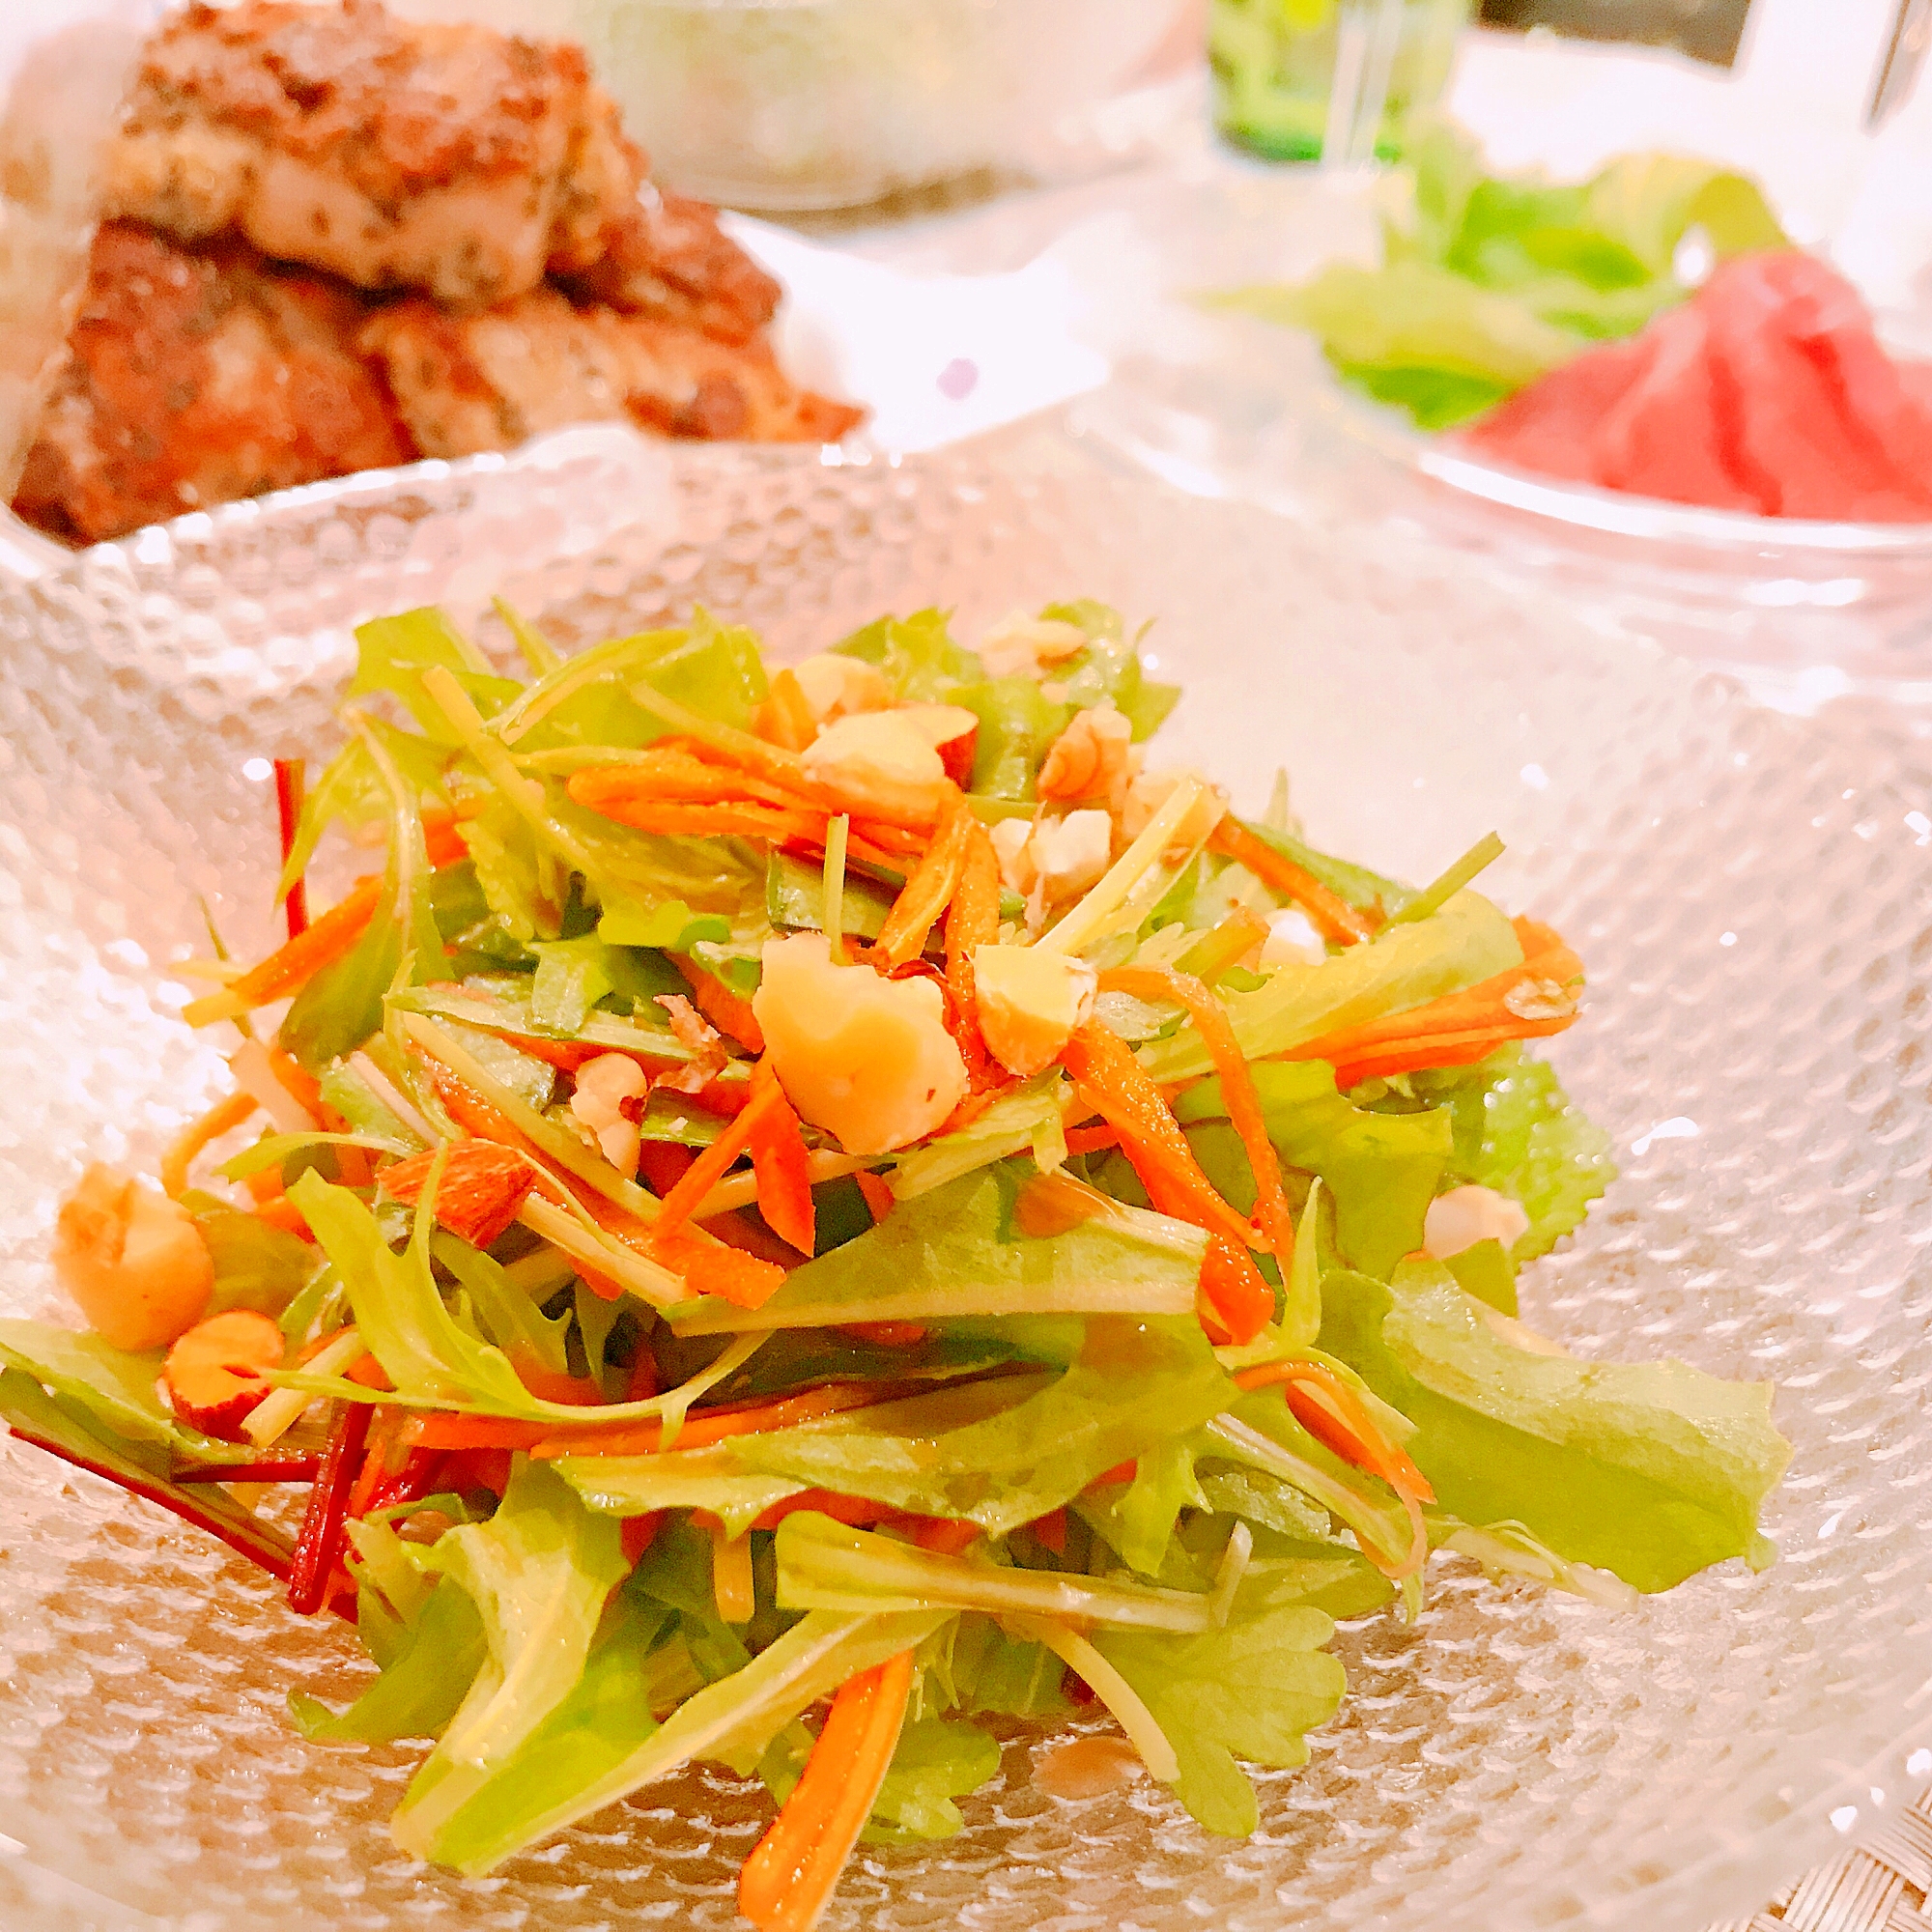 デリ風☆水菜とベビーリーフのナッツサラダ